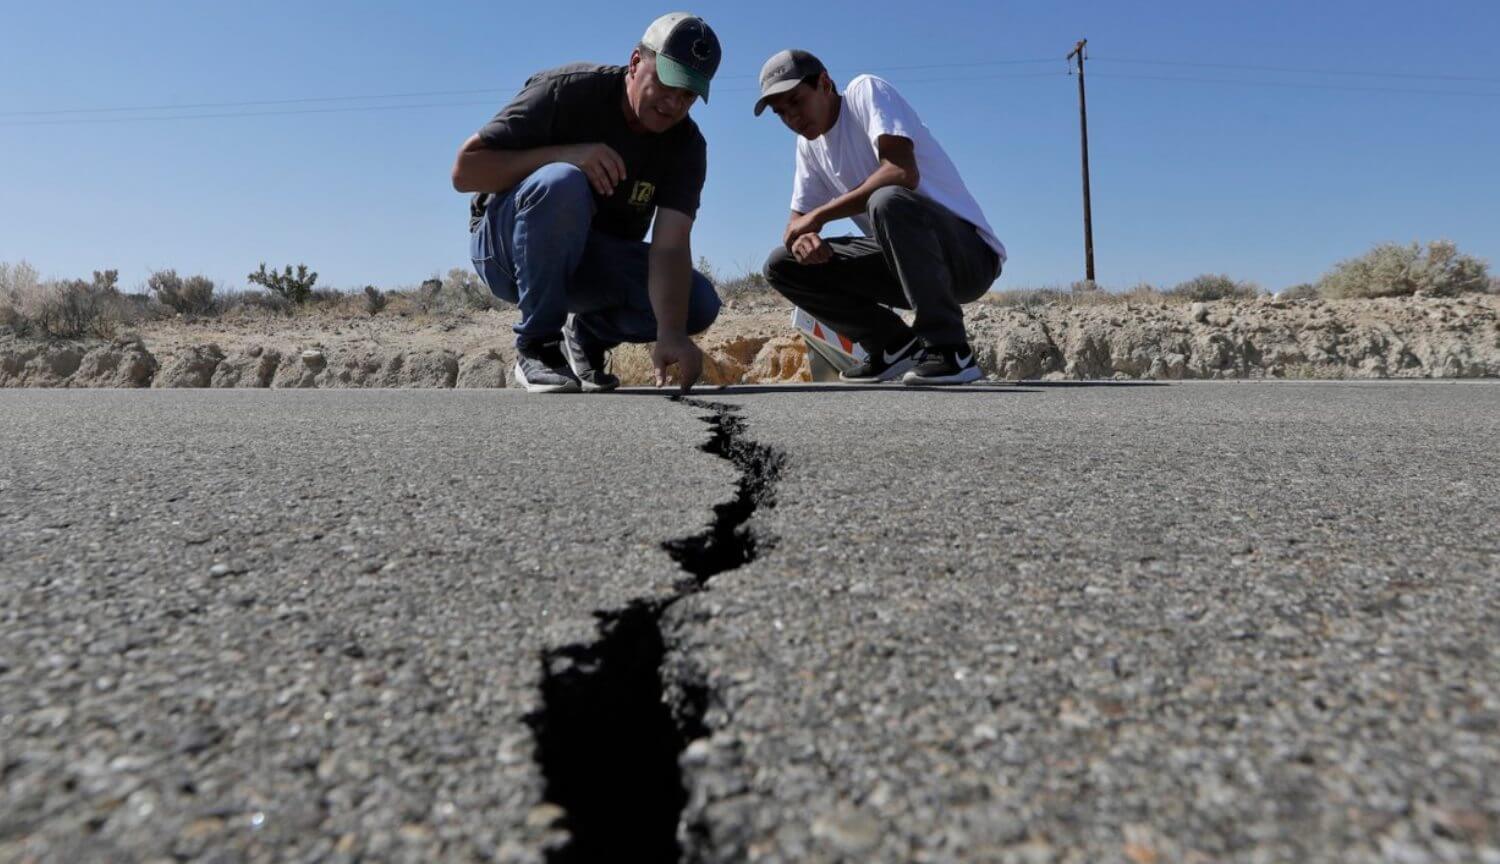 Nos estados unidos aconteceu de mais de 3000 terremotos por alguns dias. Espera-se ainda mais